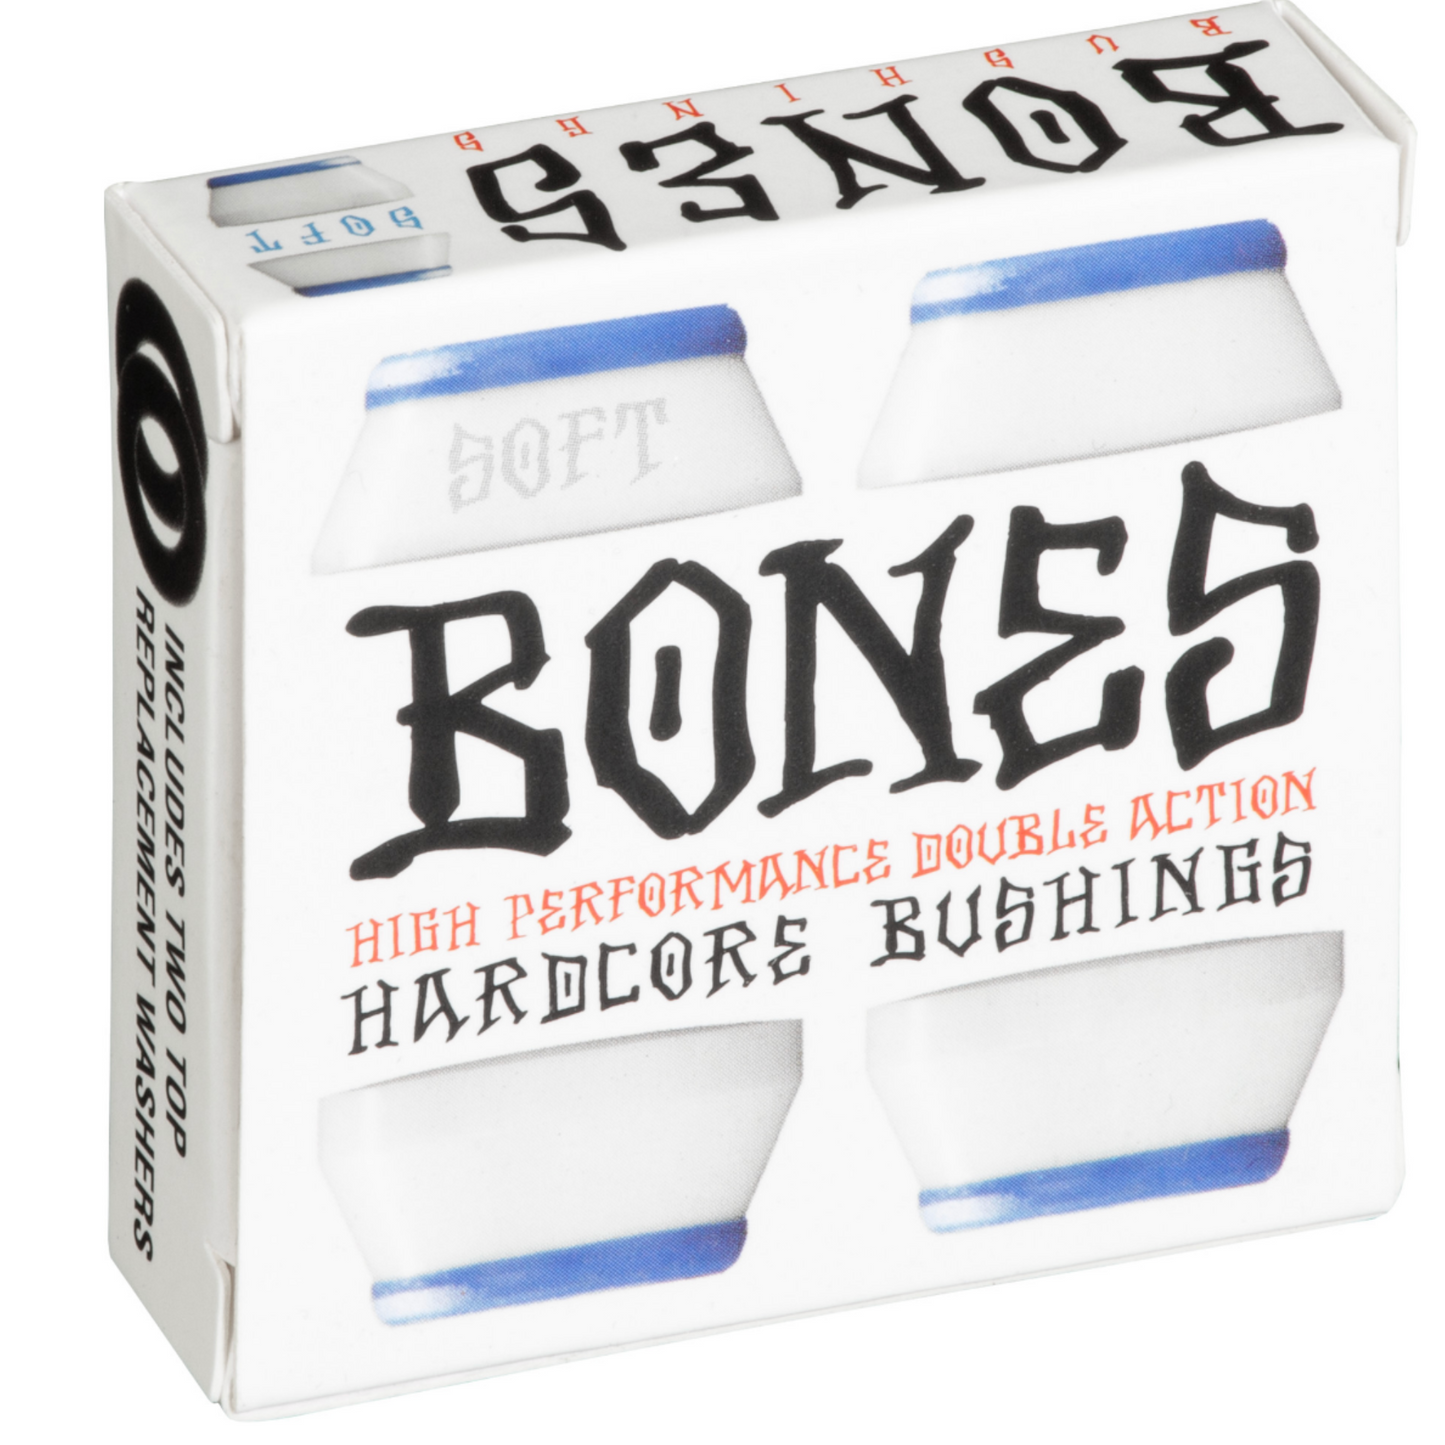 Bones Bushings - Soft